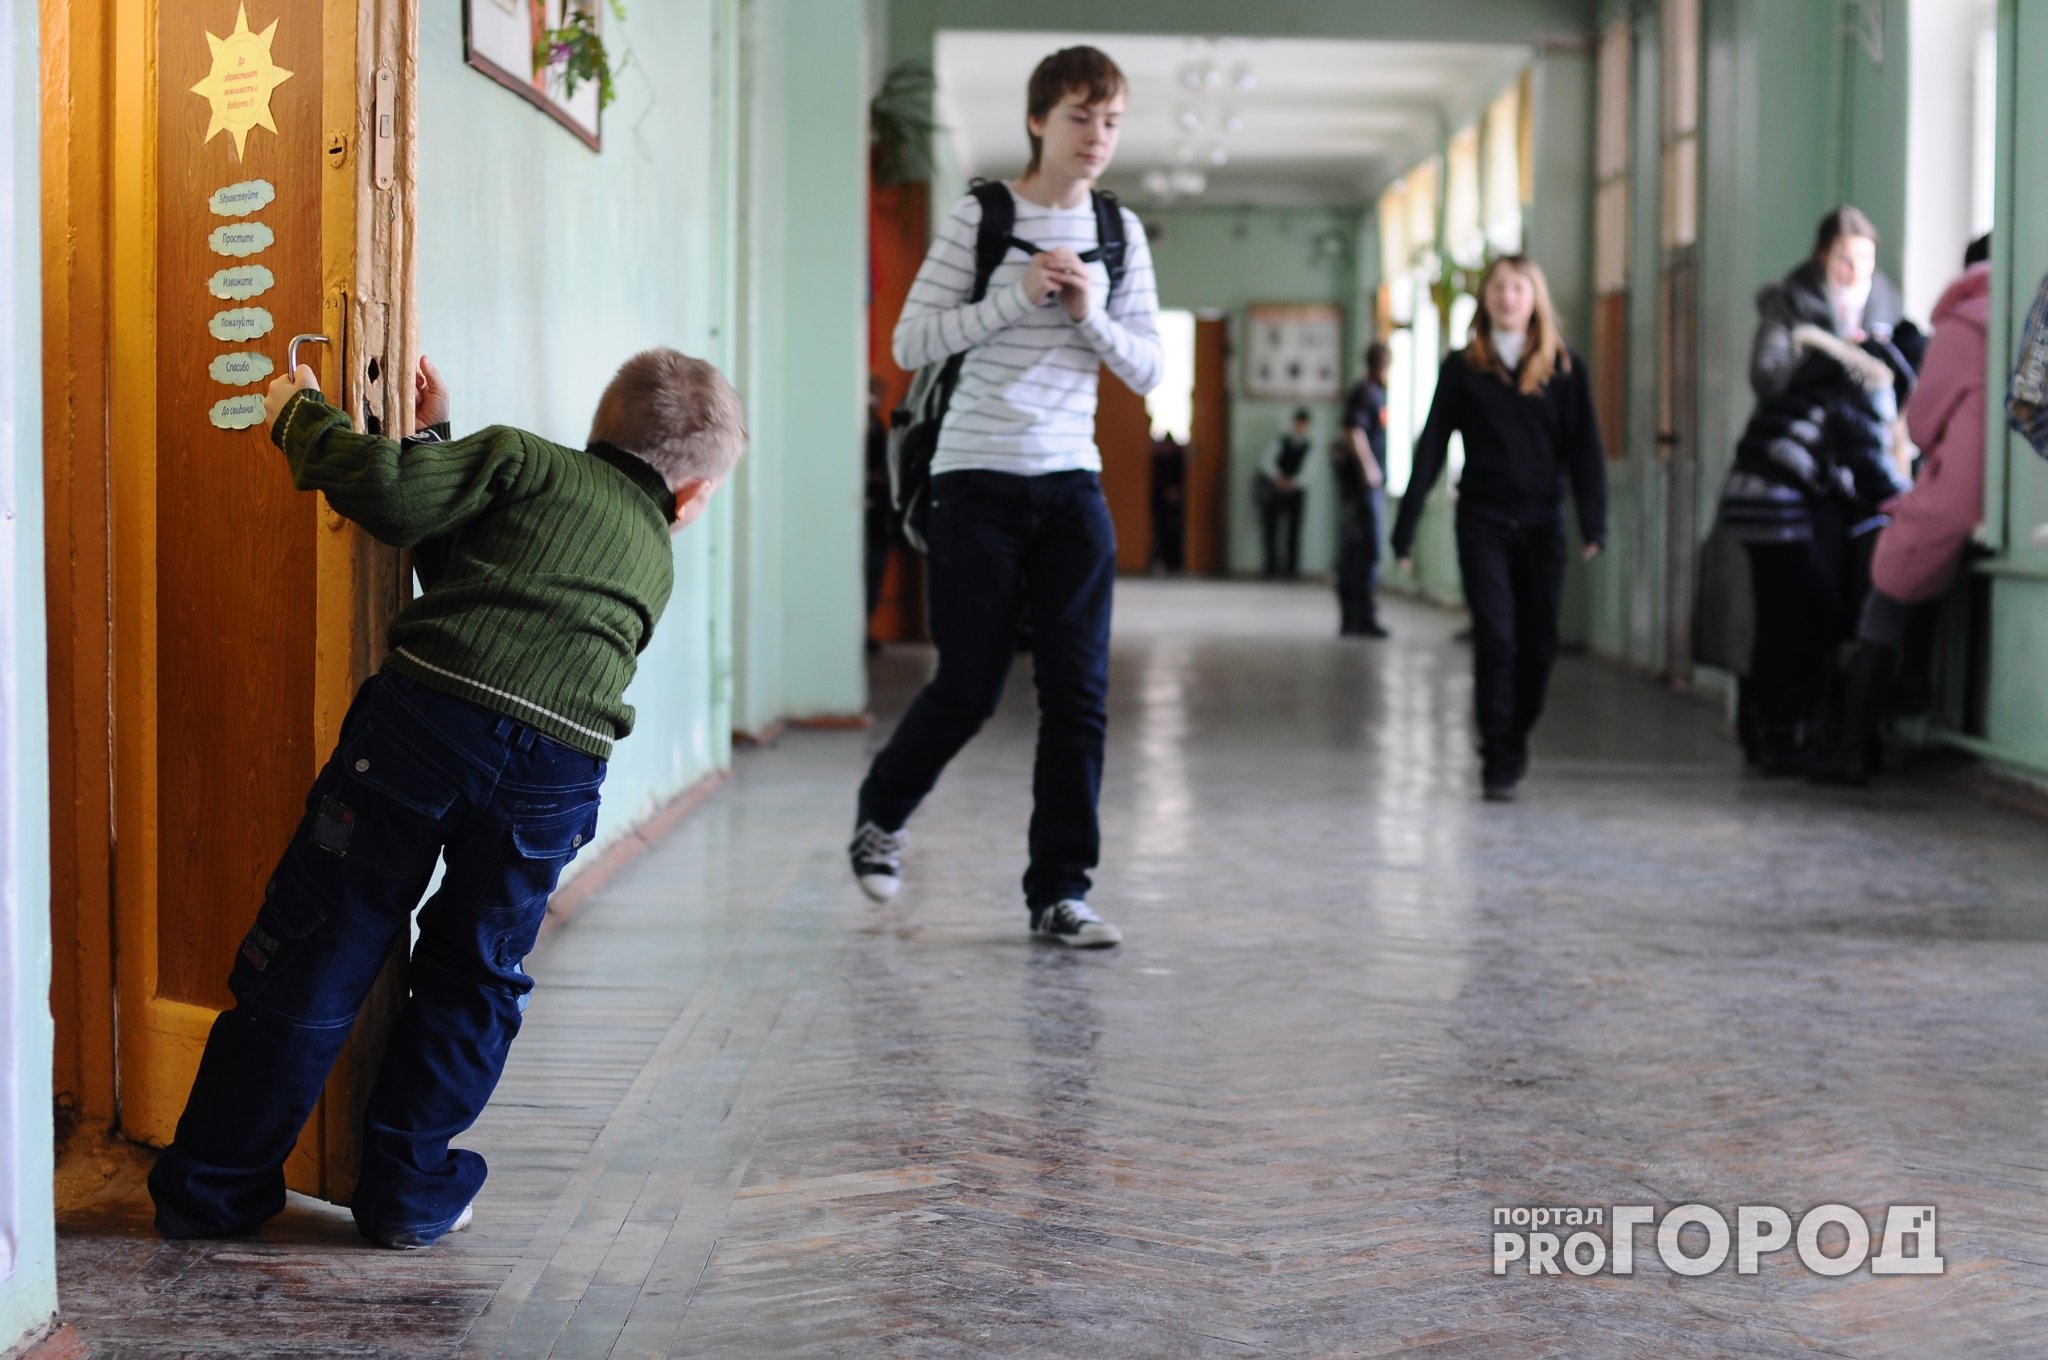 Скандал в нижегородской школе: война с учителем набирает обороты